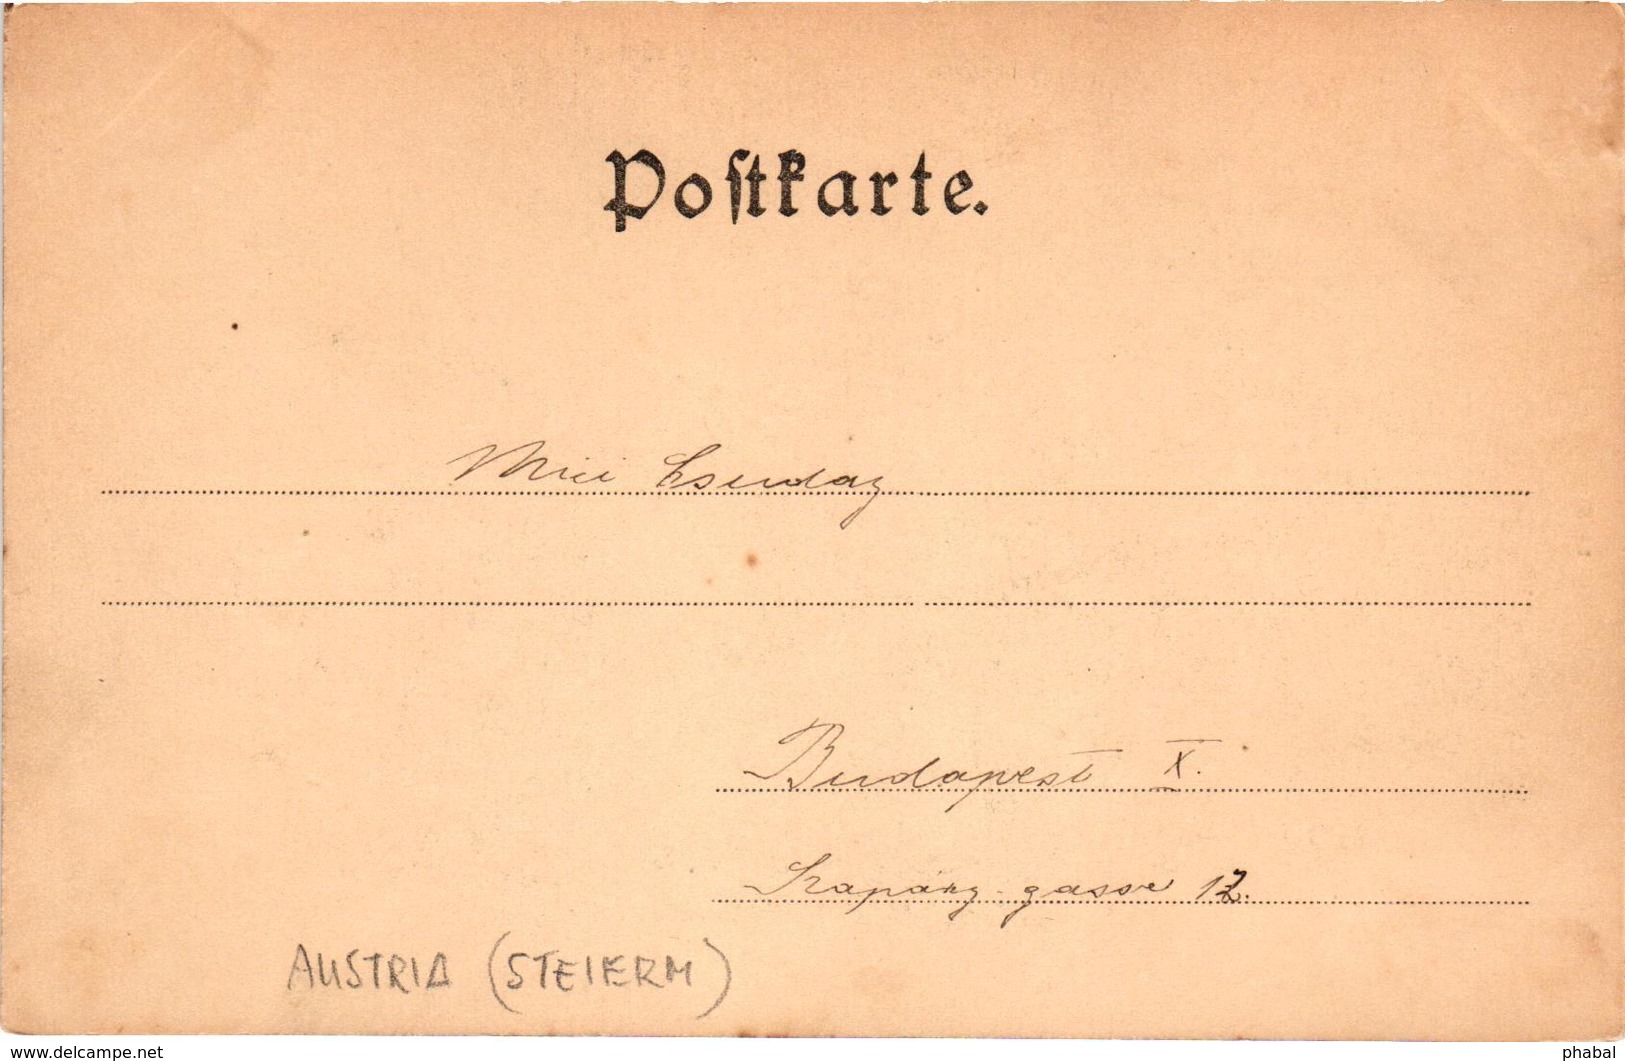 Austria, Hieflau, Steiermark, View, Old Postcard Pre. 1905 - Hieflau